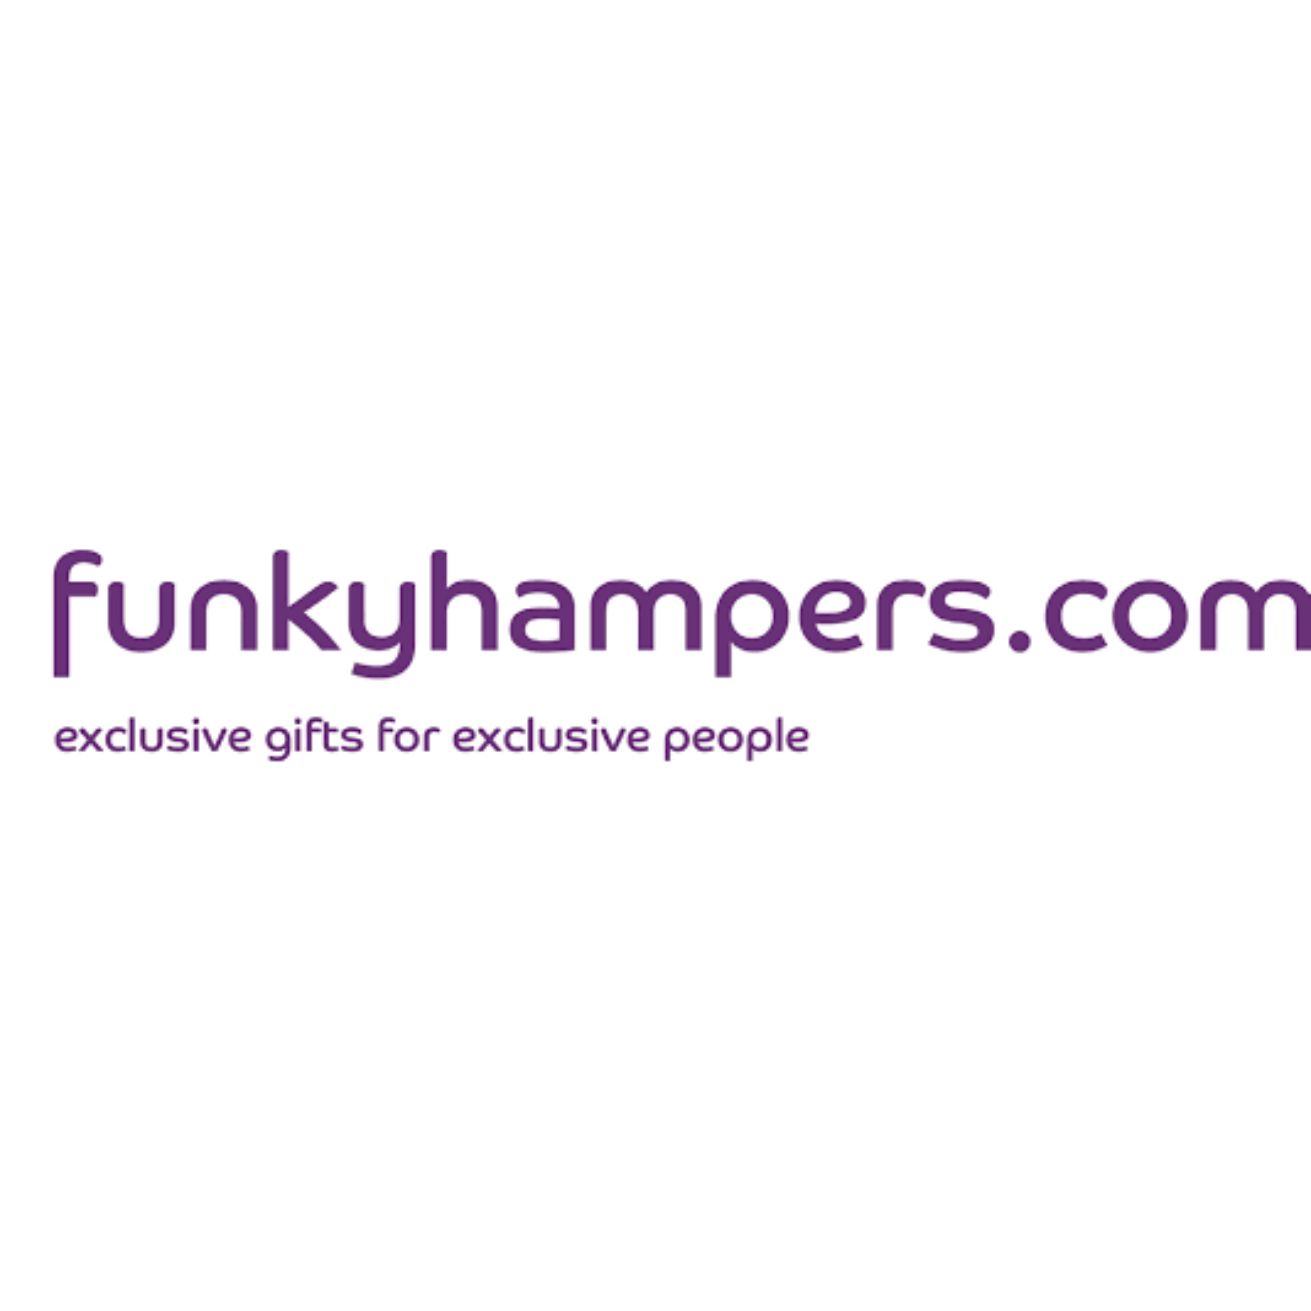 Funkyhampers